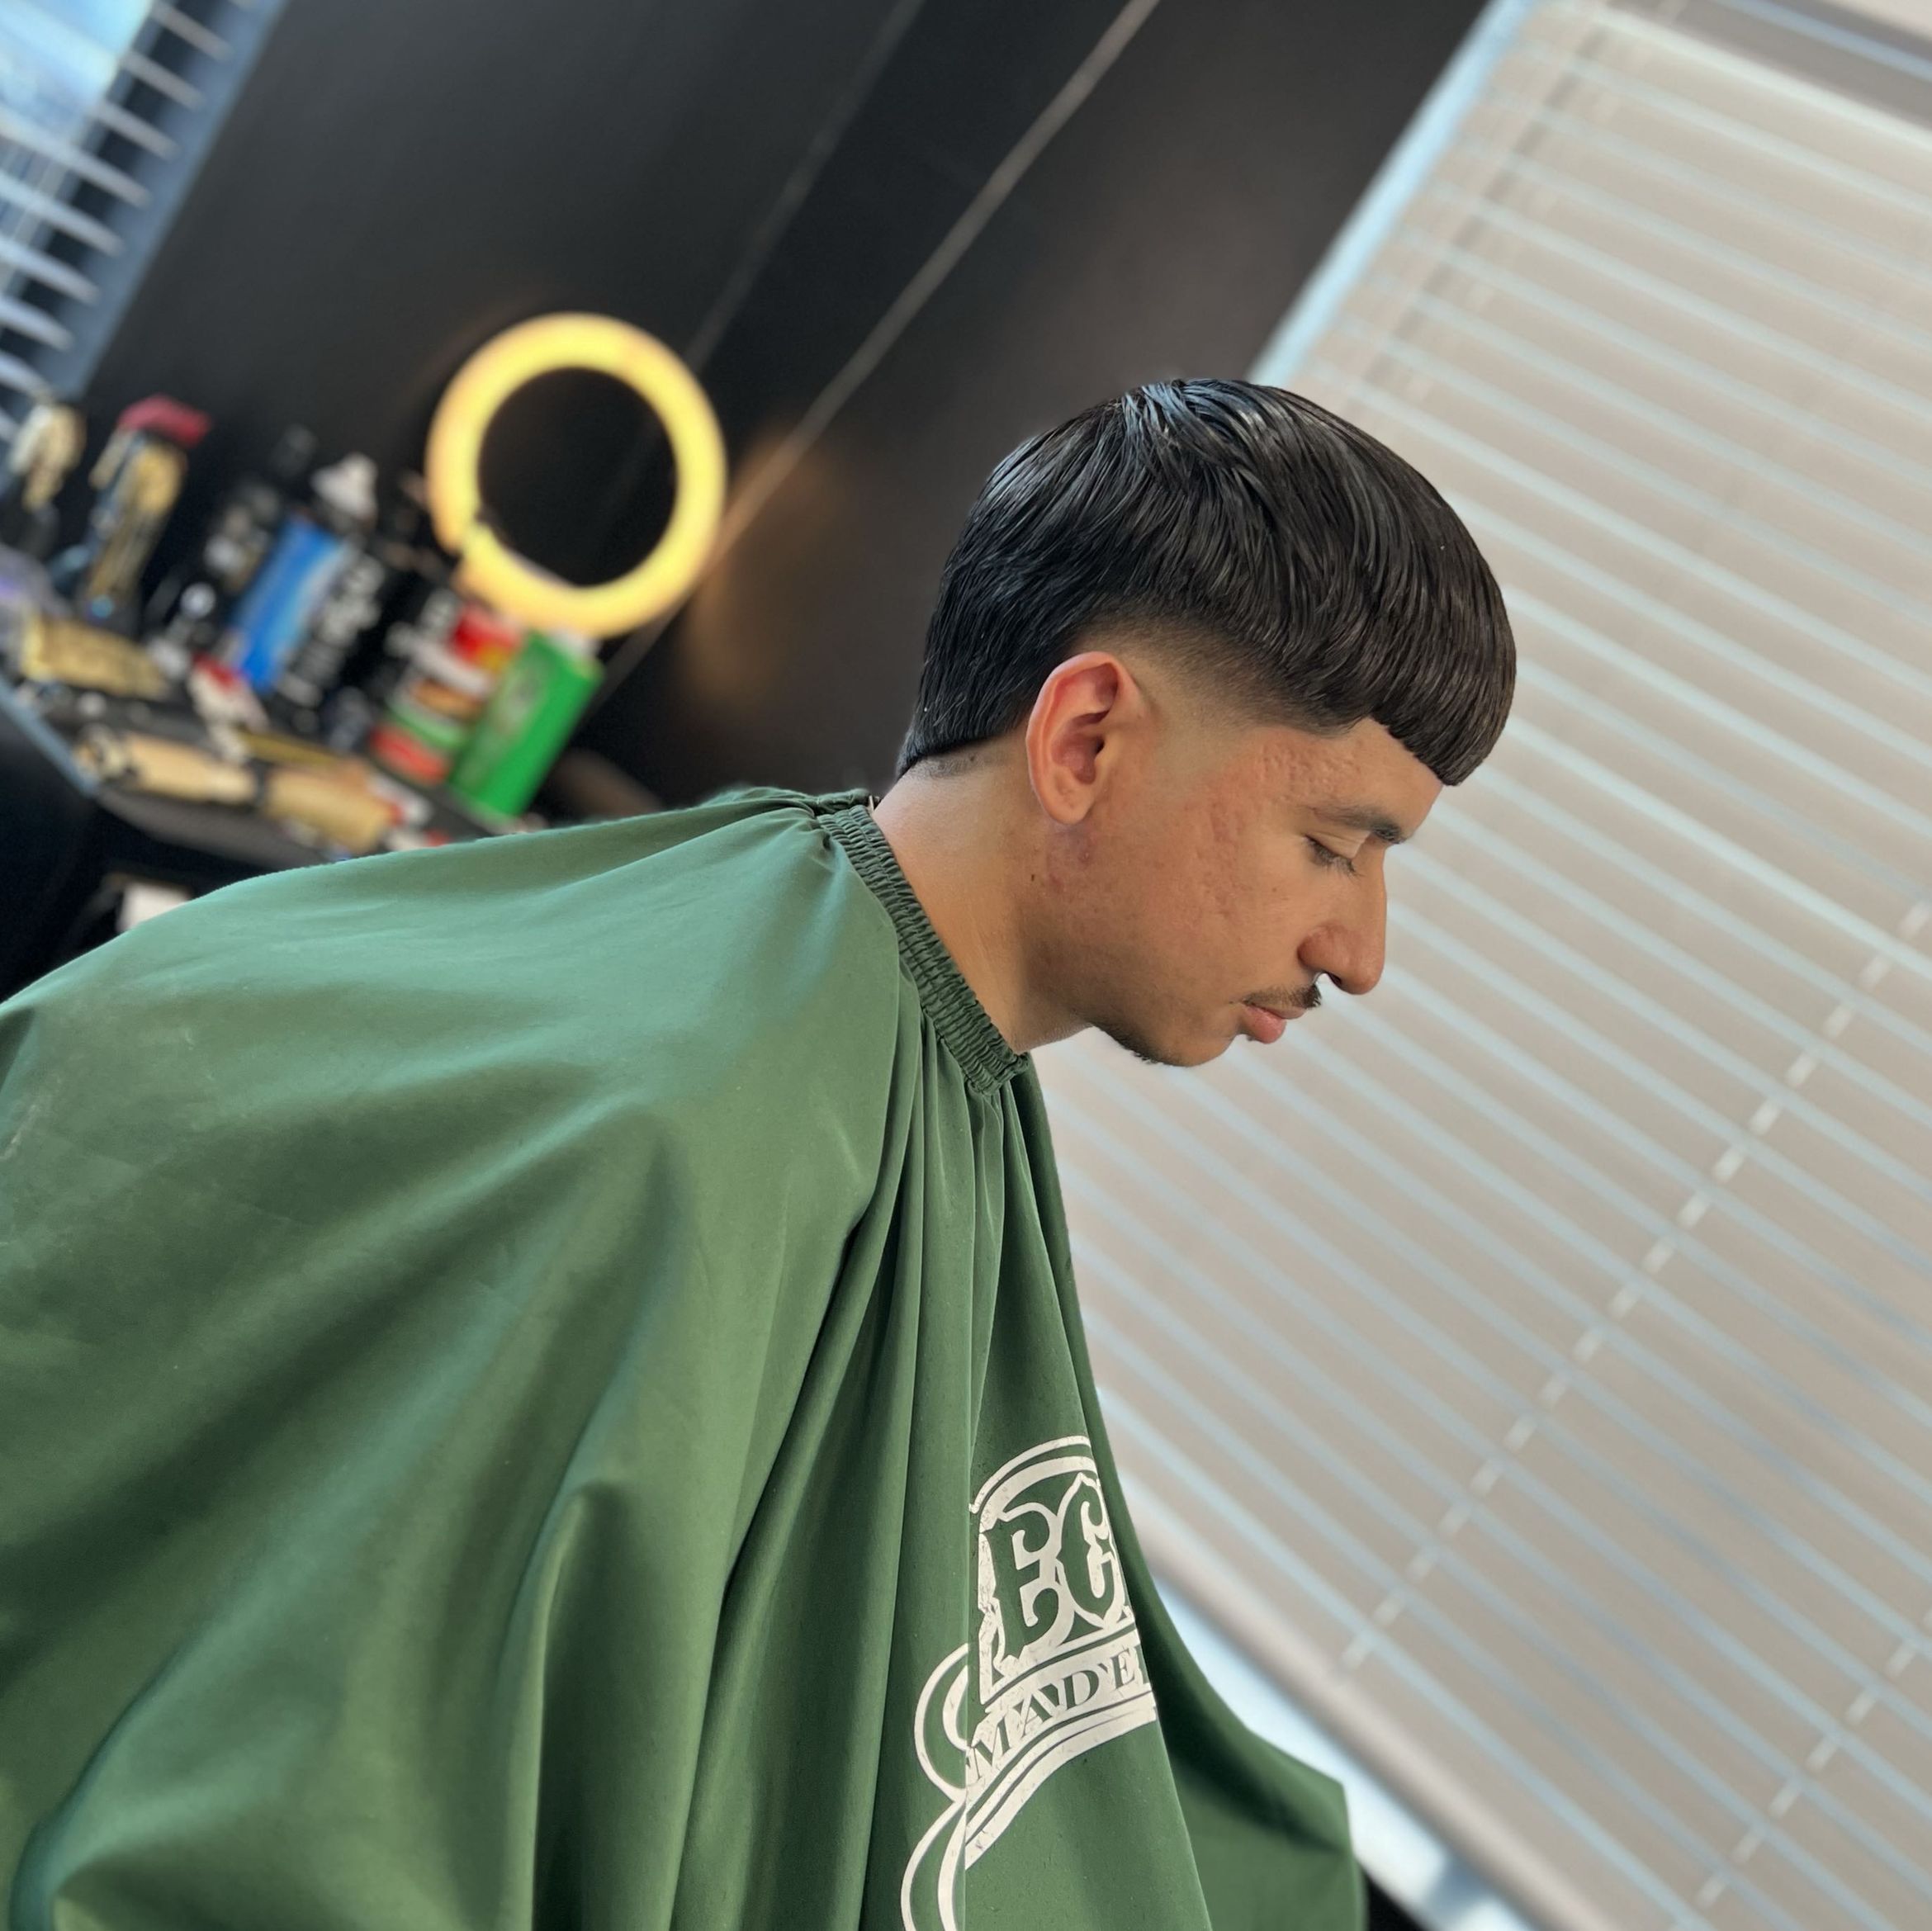 oscar’s barber shop, 805 South st, Hollister, 95023